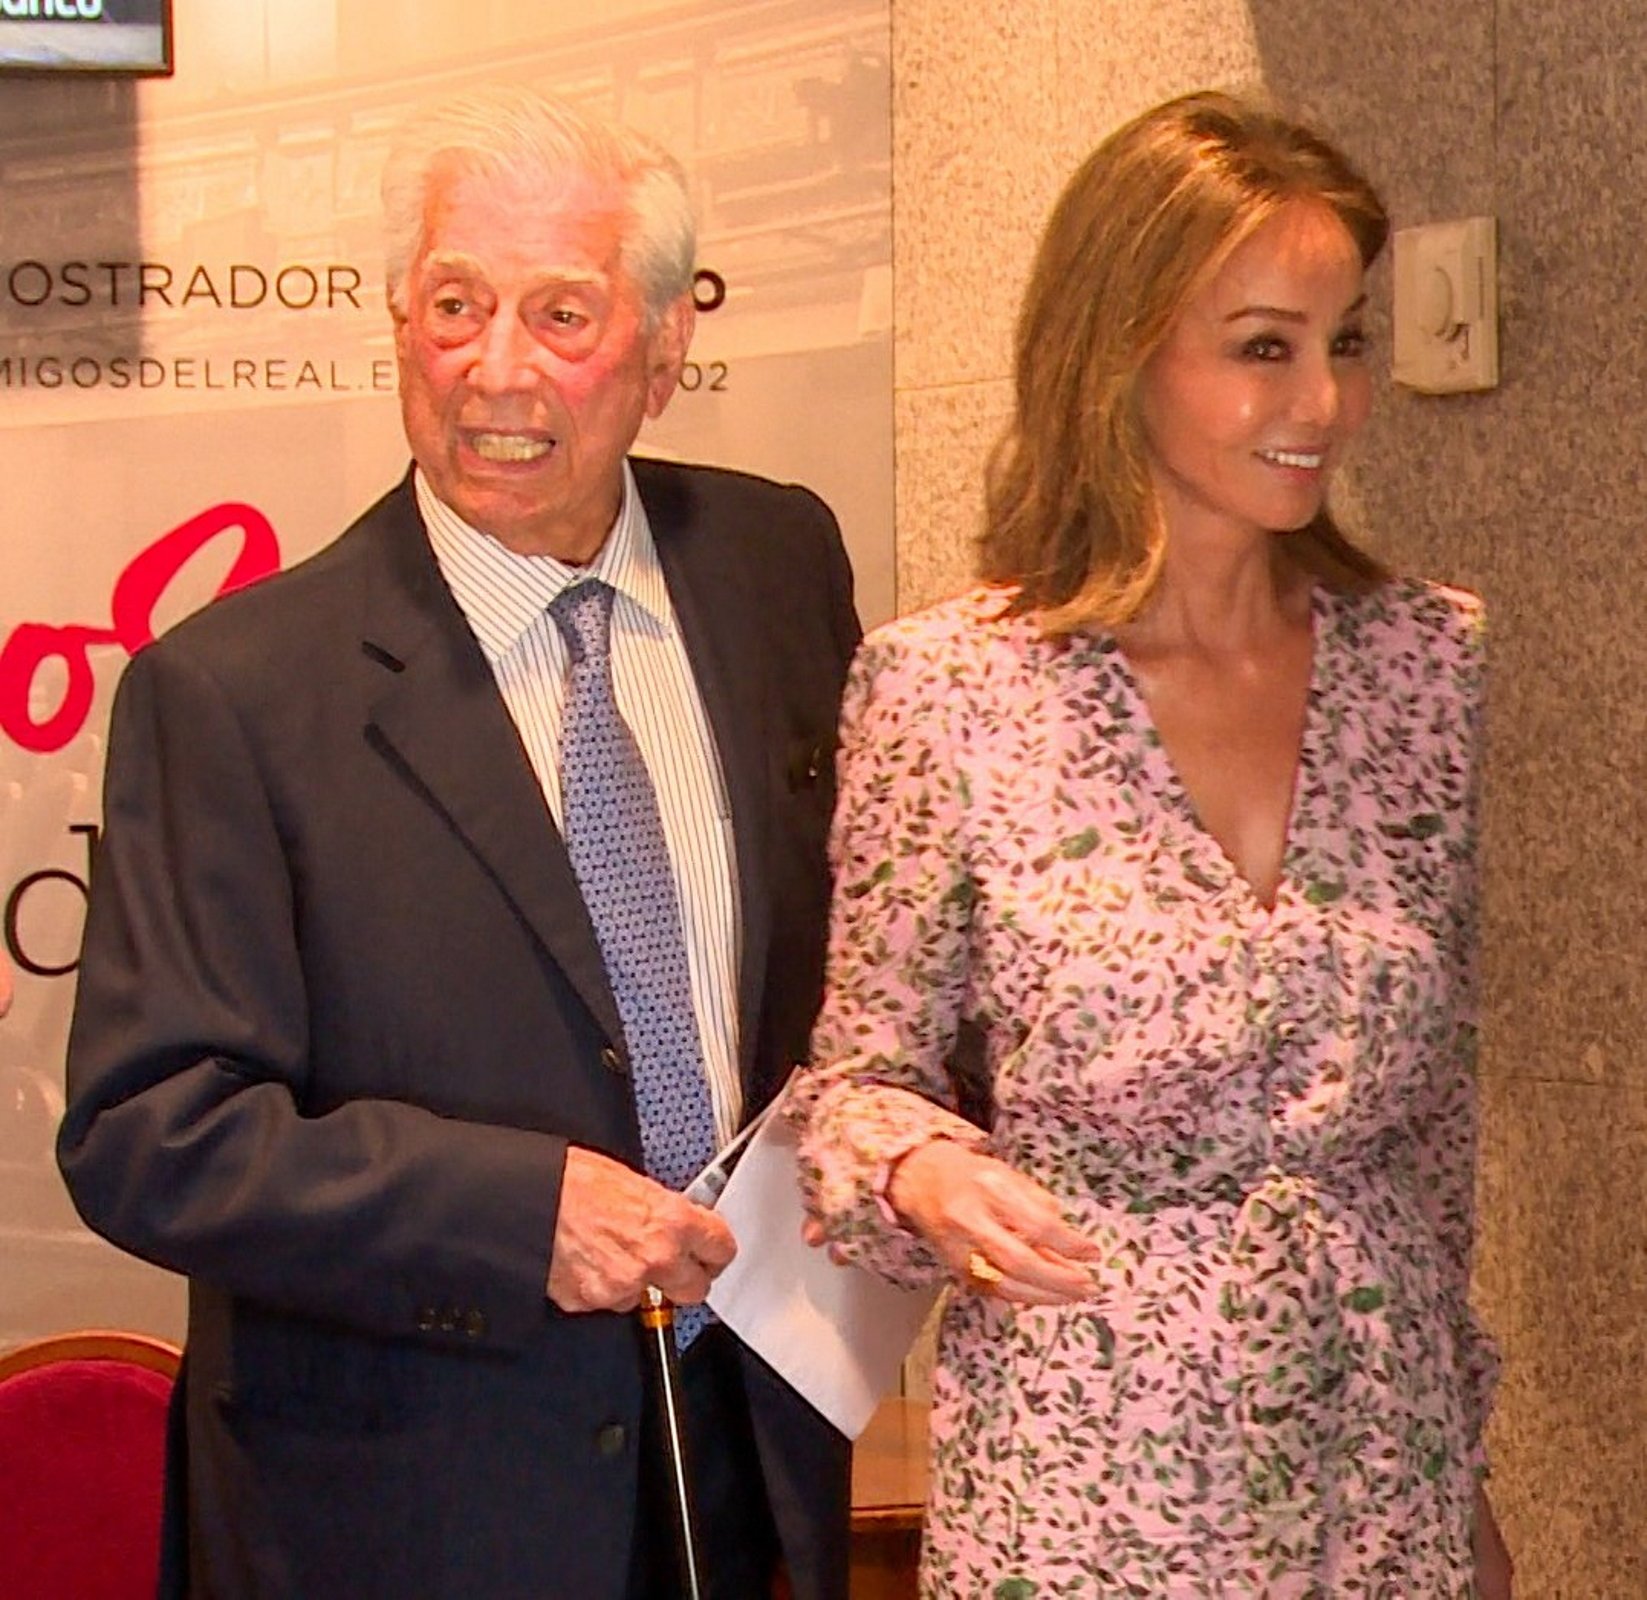 Isabel Preysler sobre el vestuari de Mario Vargas Llosa: no se'n refia i fa això